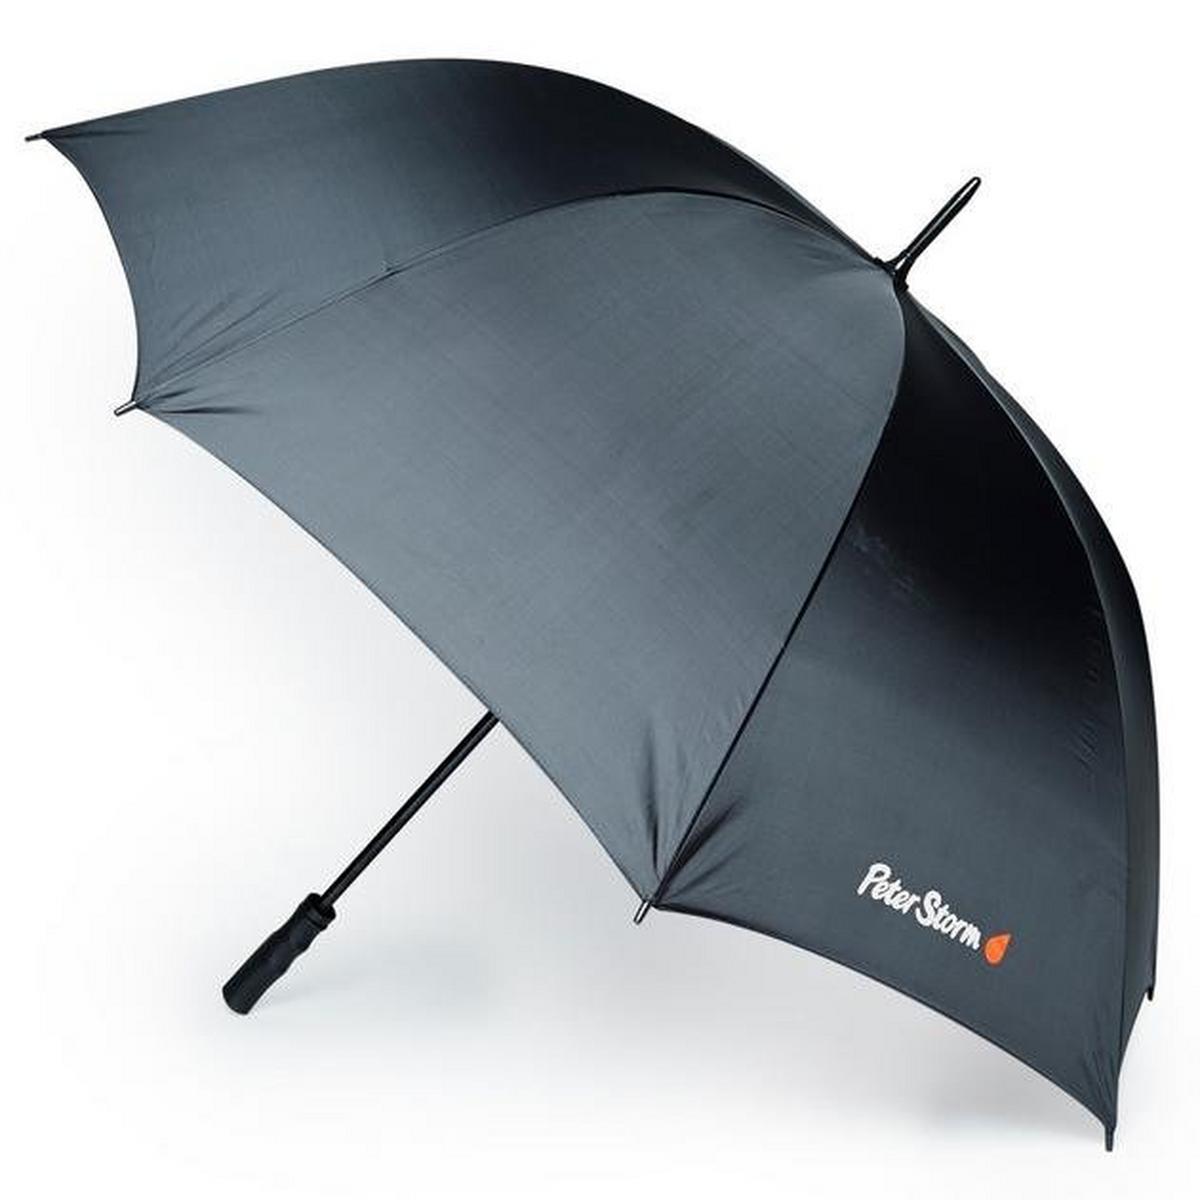 Peter Storm Golf Umbrella - Black